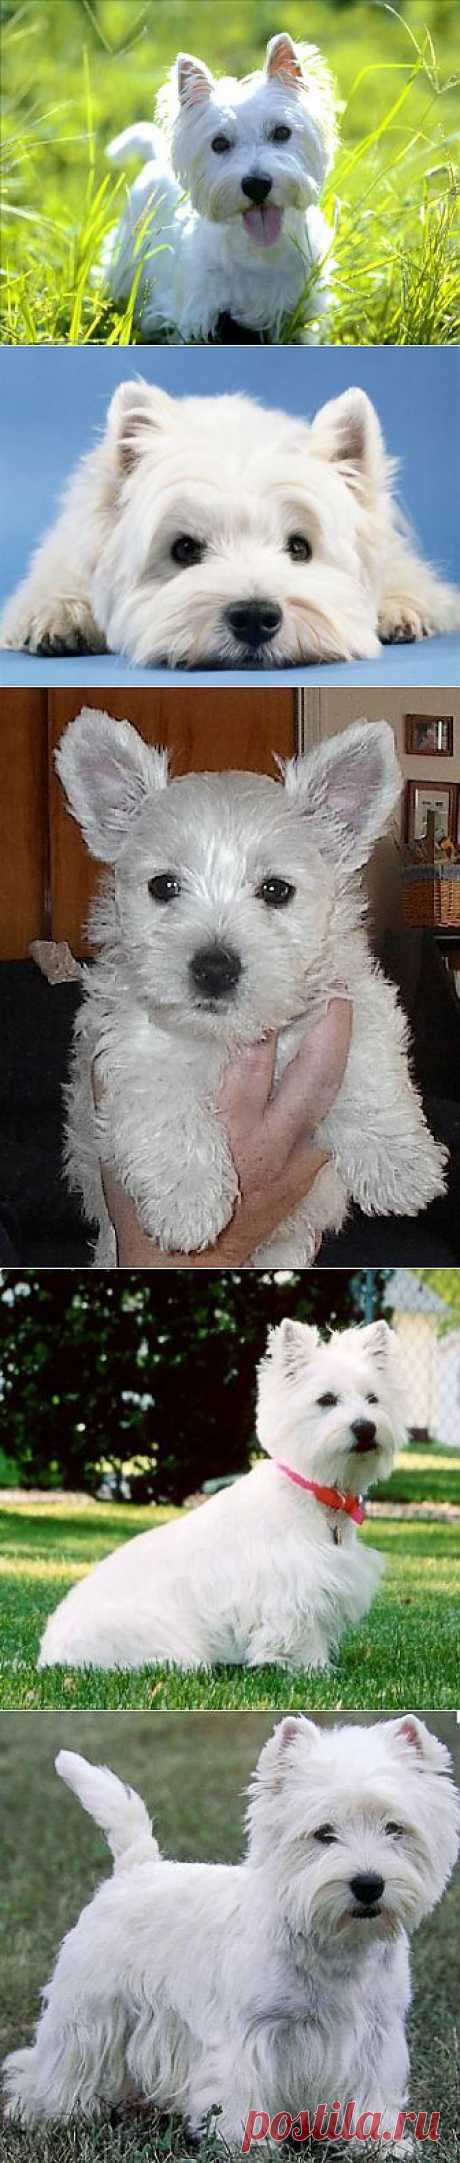 Вест хайленд уайт терьер (West highland white terrier) - описание породы и фото, щенки и питомники, уход за собакой | Animal.ru